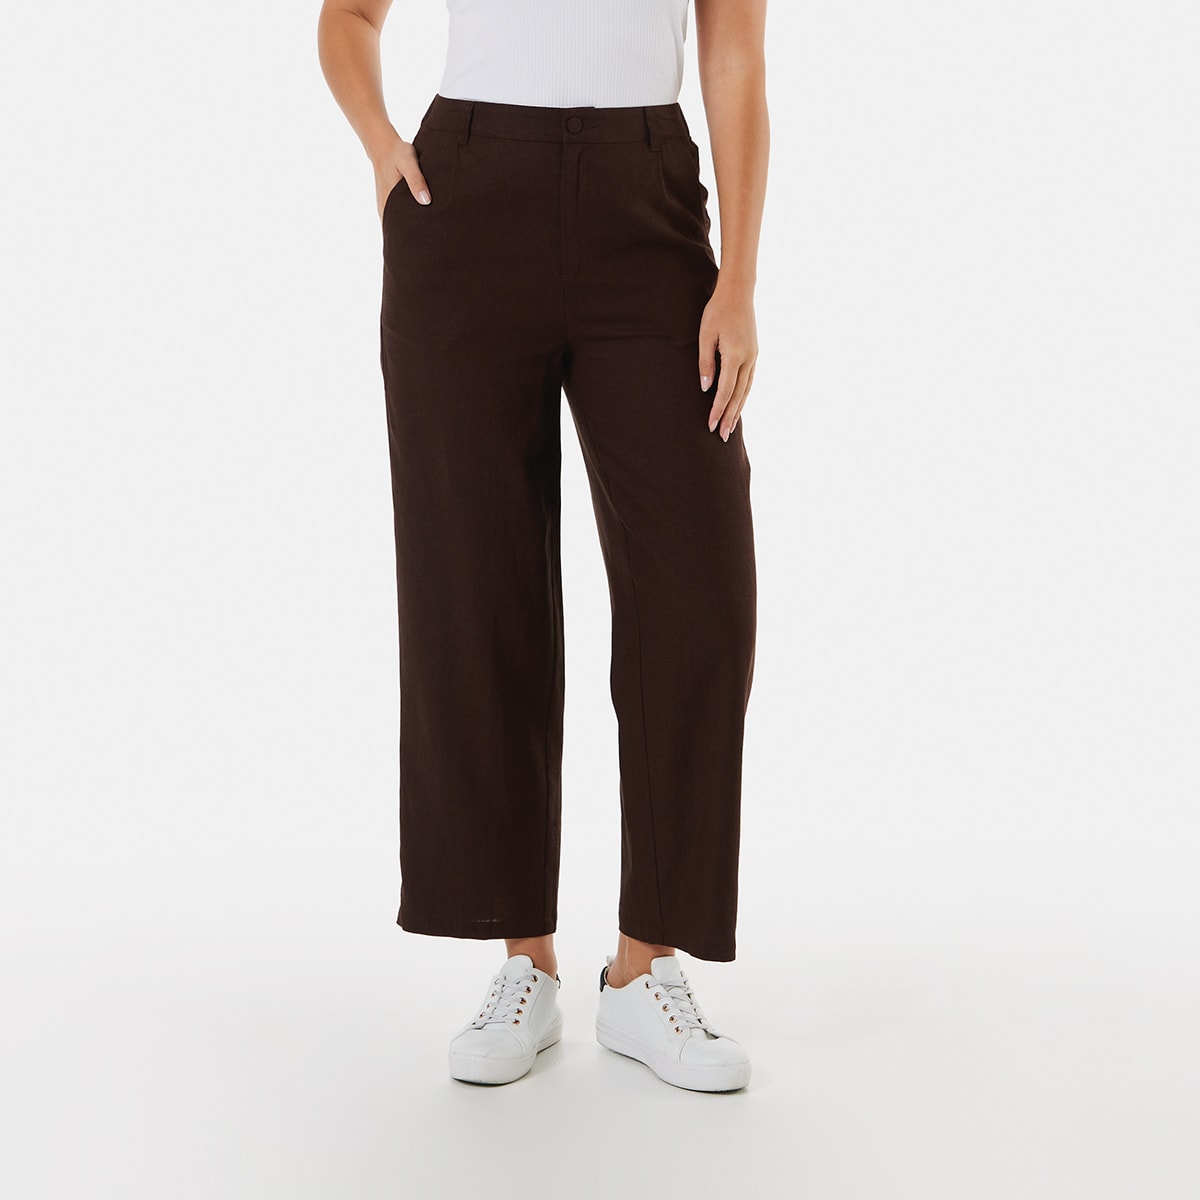 Linen Blend Pull On Shorts - Kmart